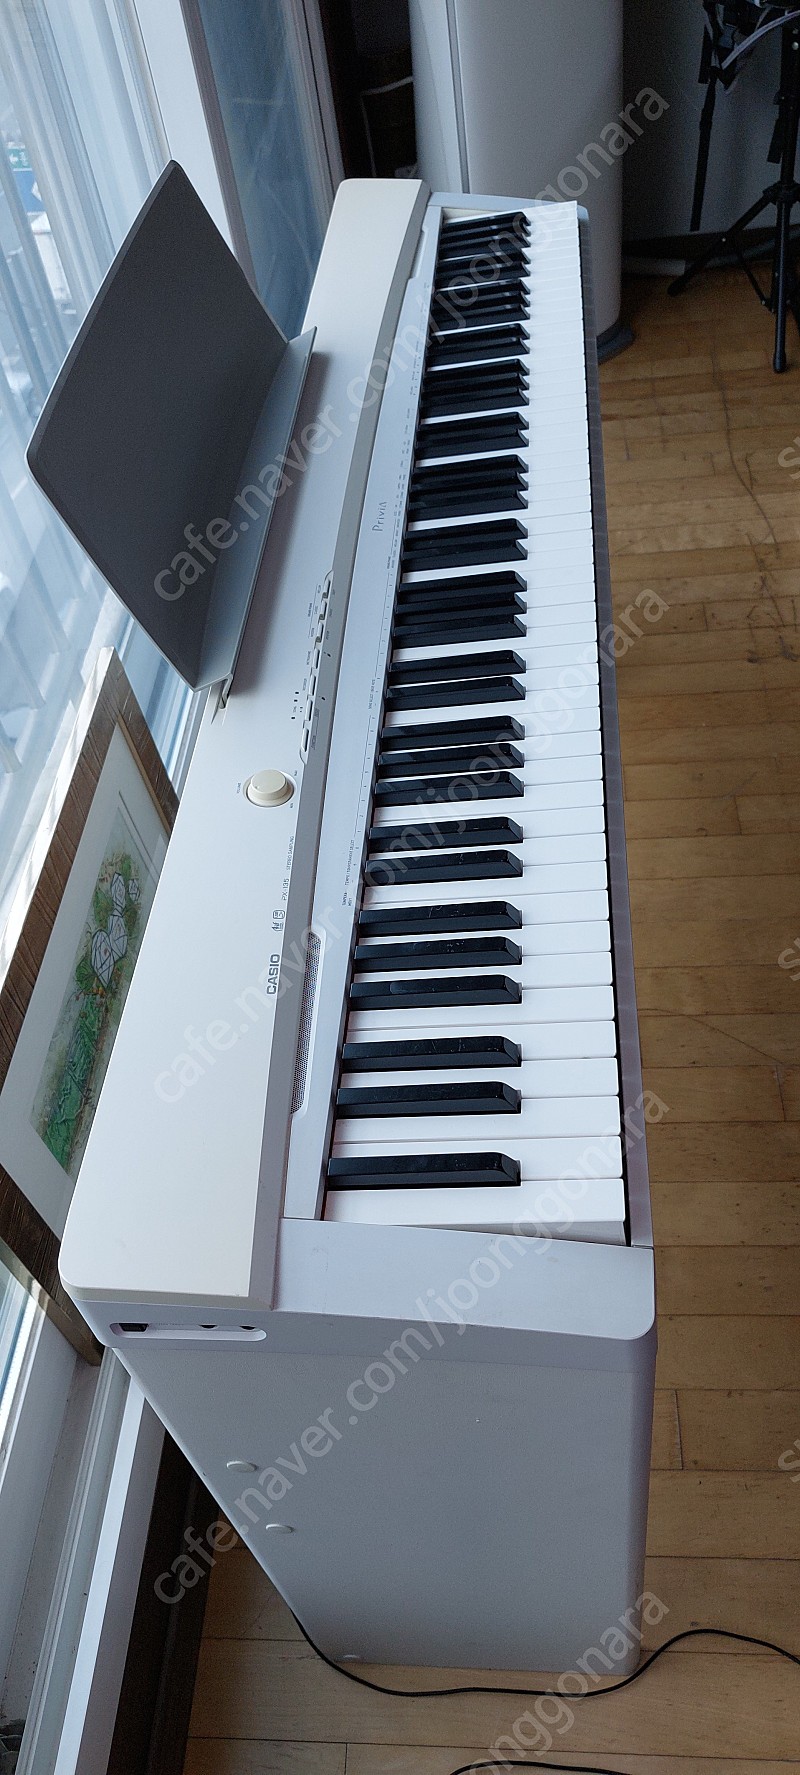 카시오 디지털 피아노 px-135